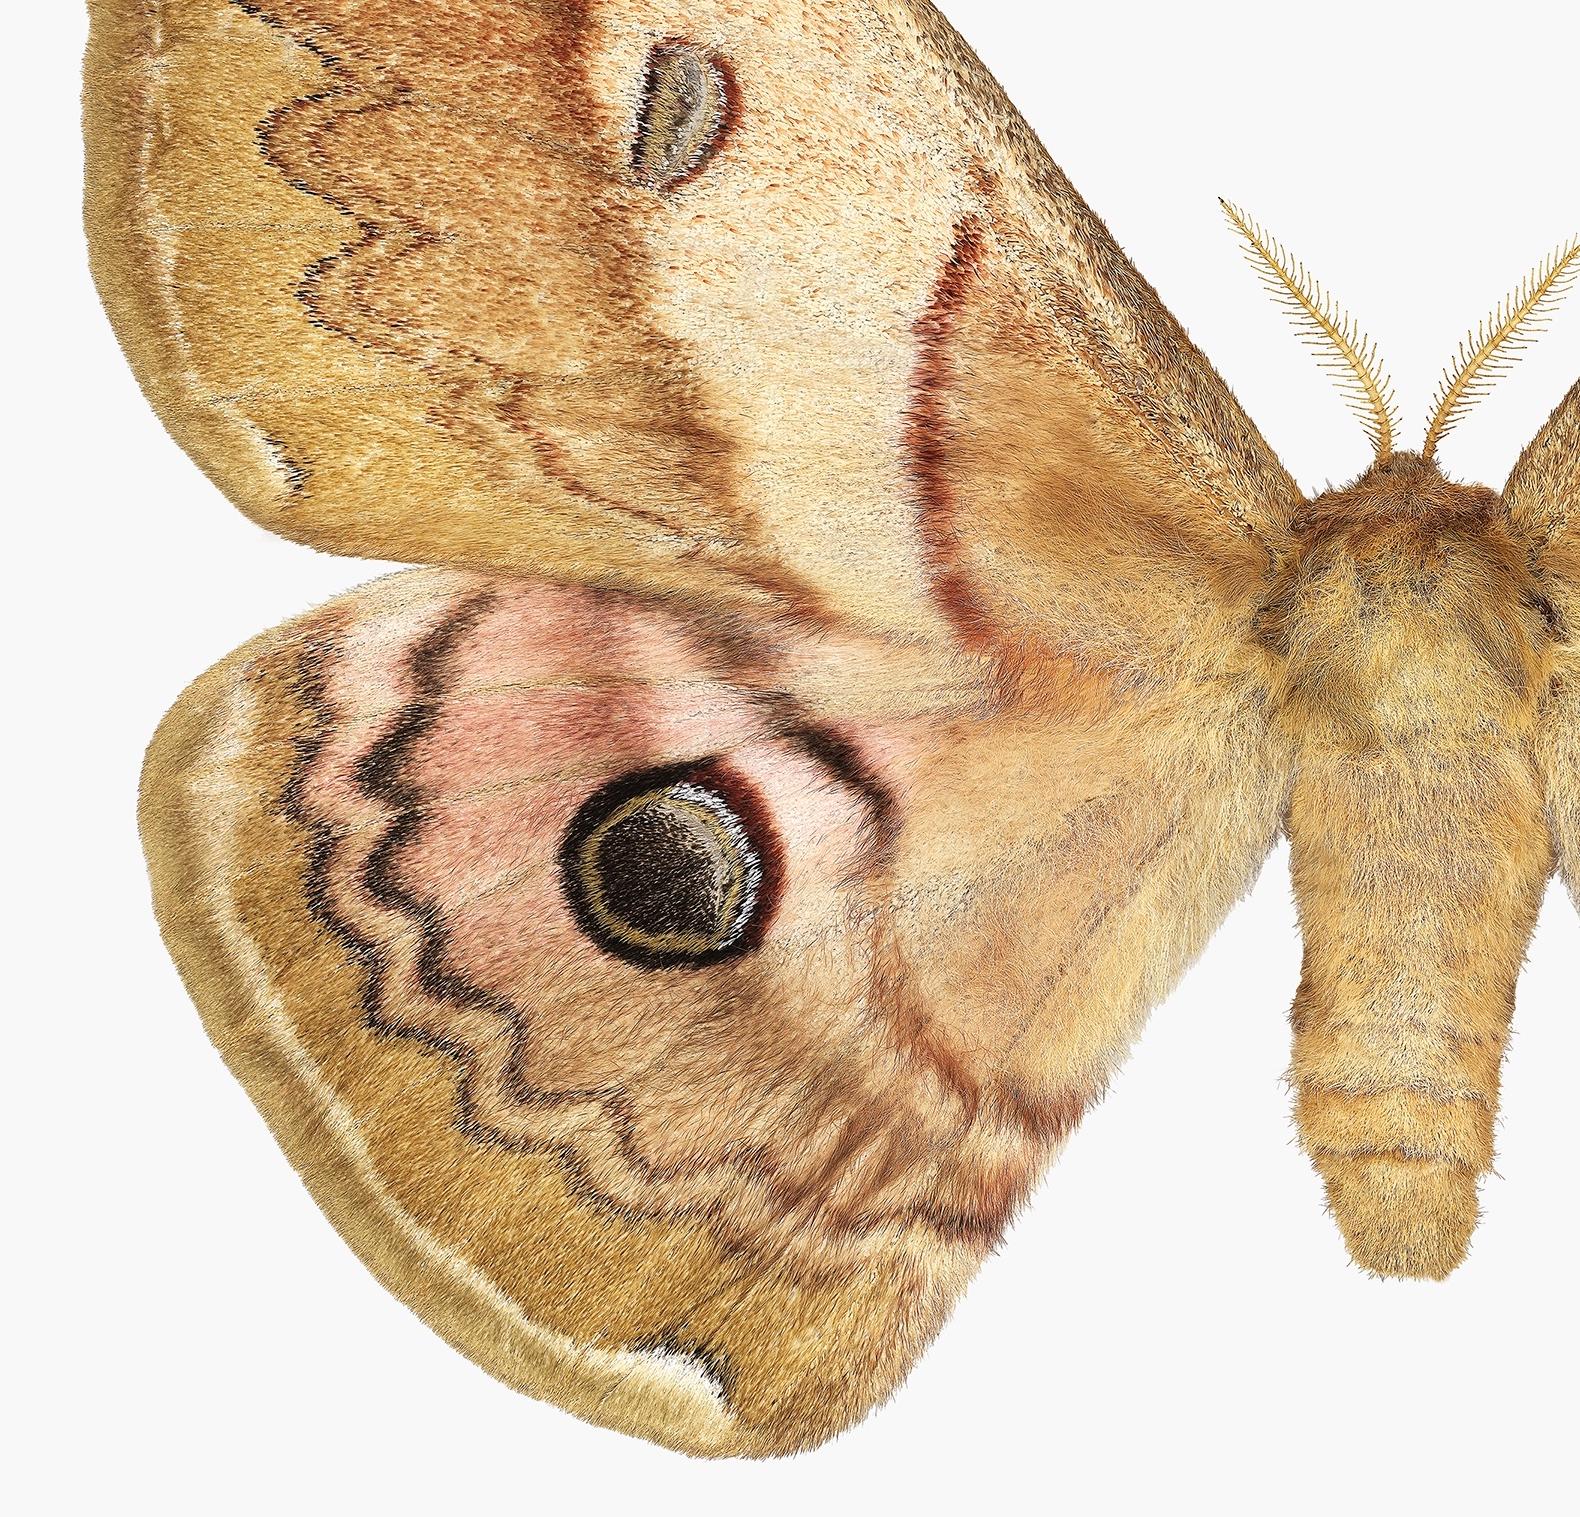 Caligula Japonica femelle, Brown doré, OCHRE papillon de nuit blanc, insecte ailé Nature - Photograph de Joseph Scheer